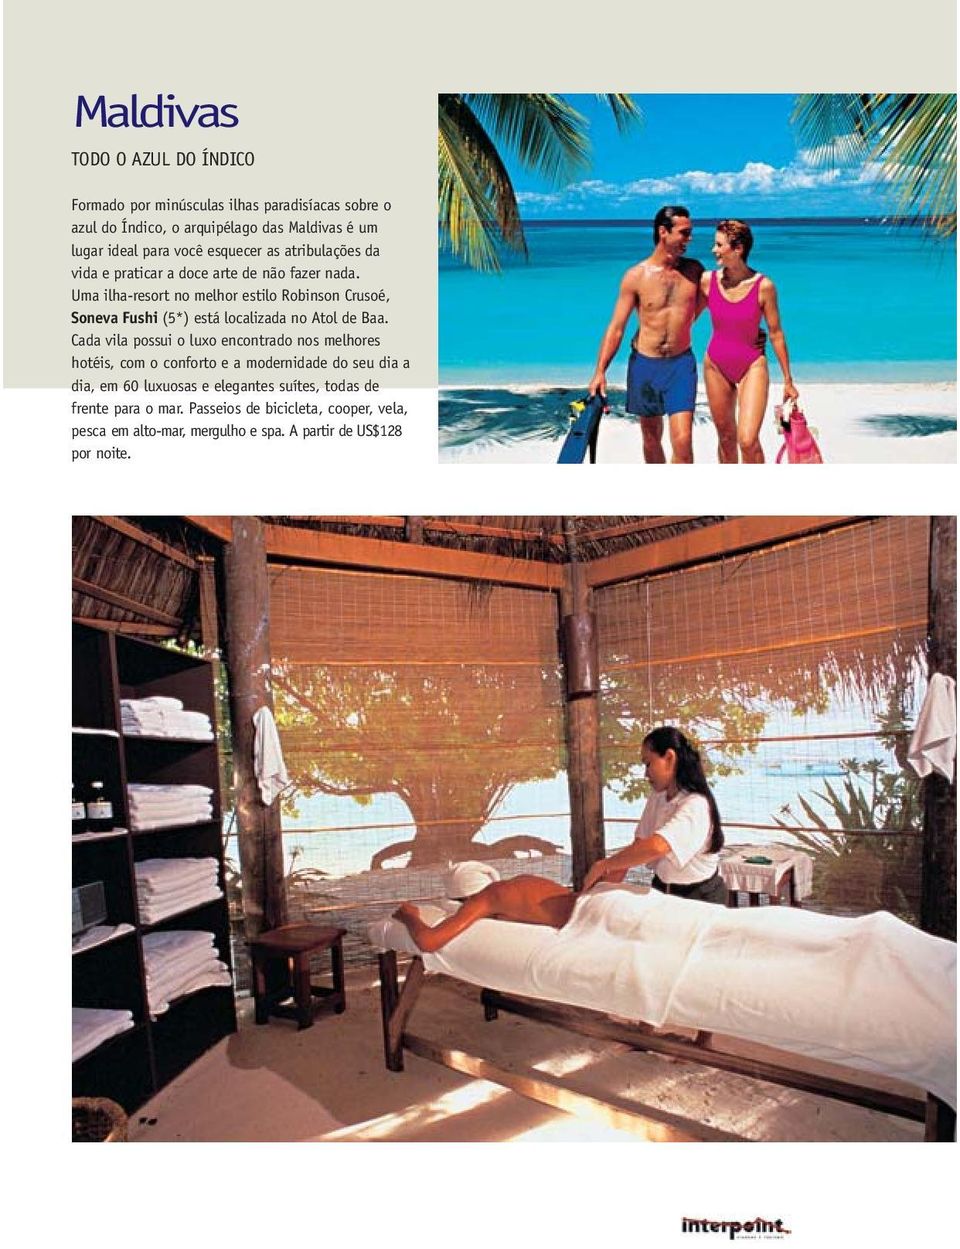 Uma ilha-resort no melhor estilo Robinson Crusoé, Soneva Fushi (5*) está localizada no Atol de Baa.